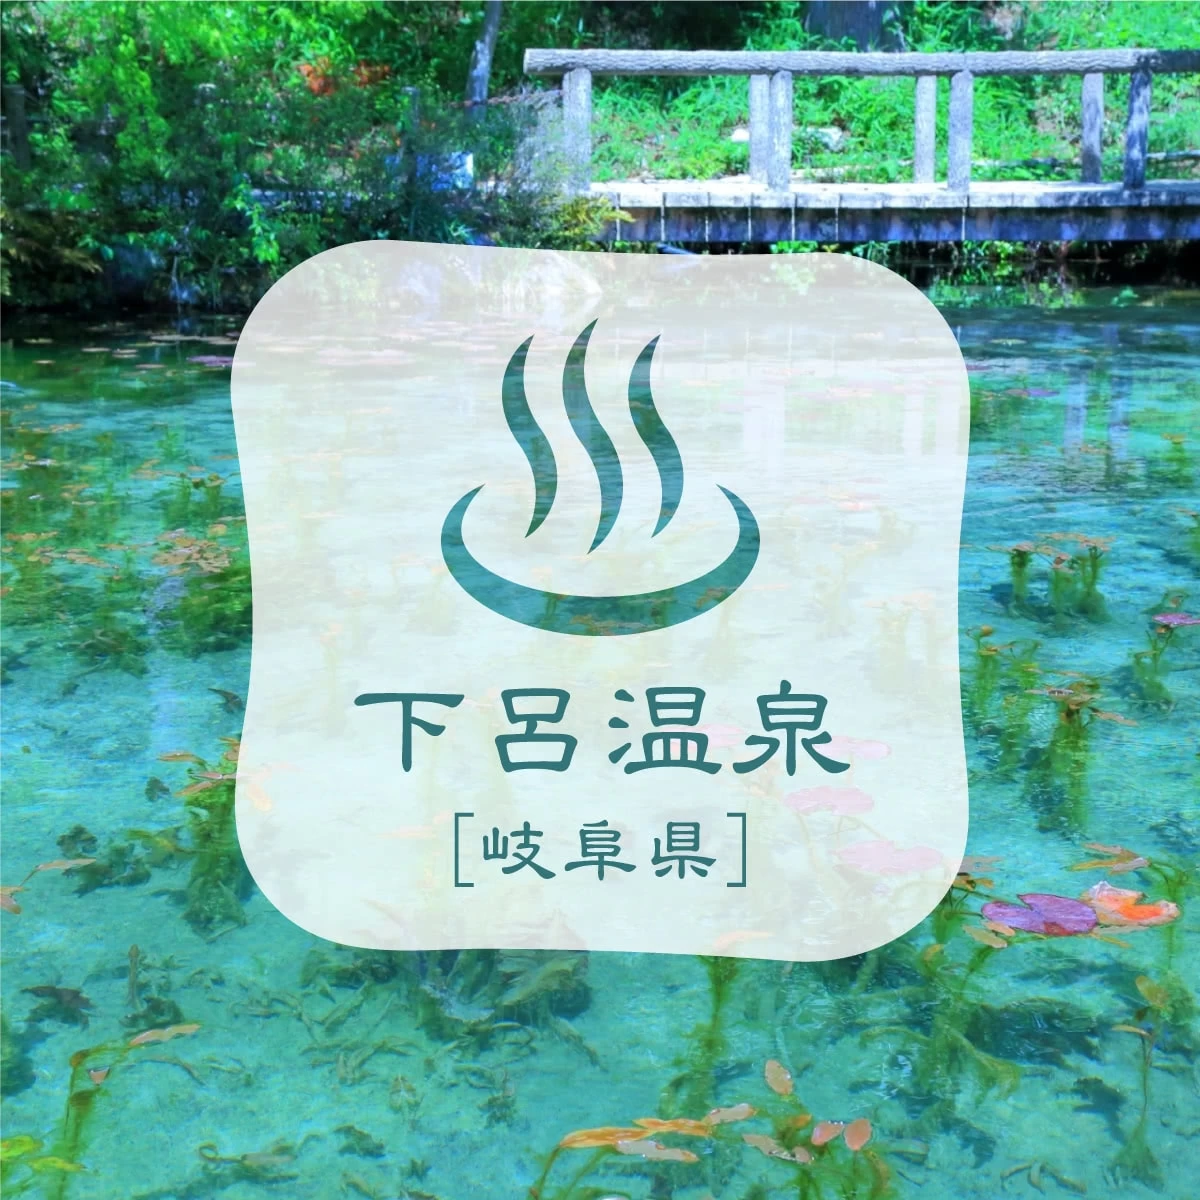 下呂温泉でスイーツ巡り  モネの池も楽しむ女子旅